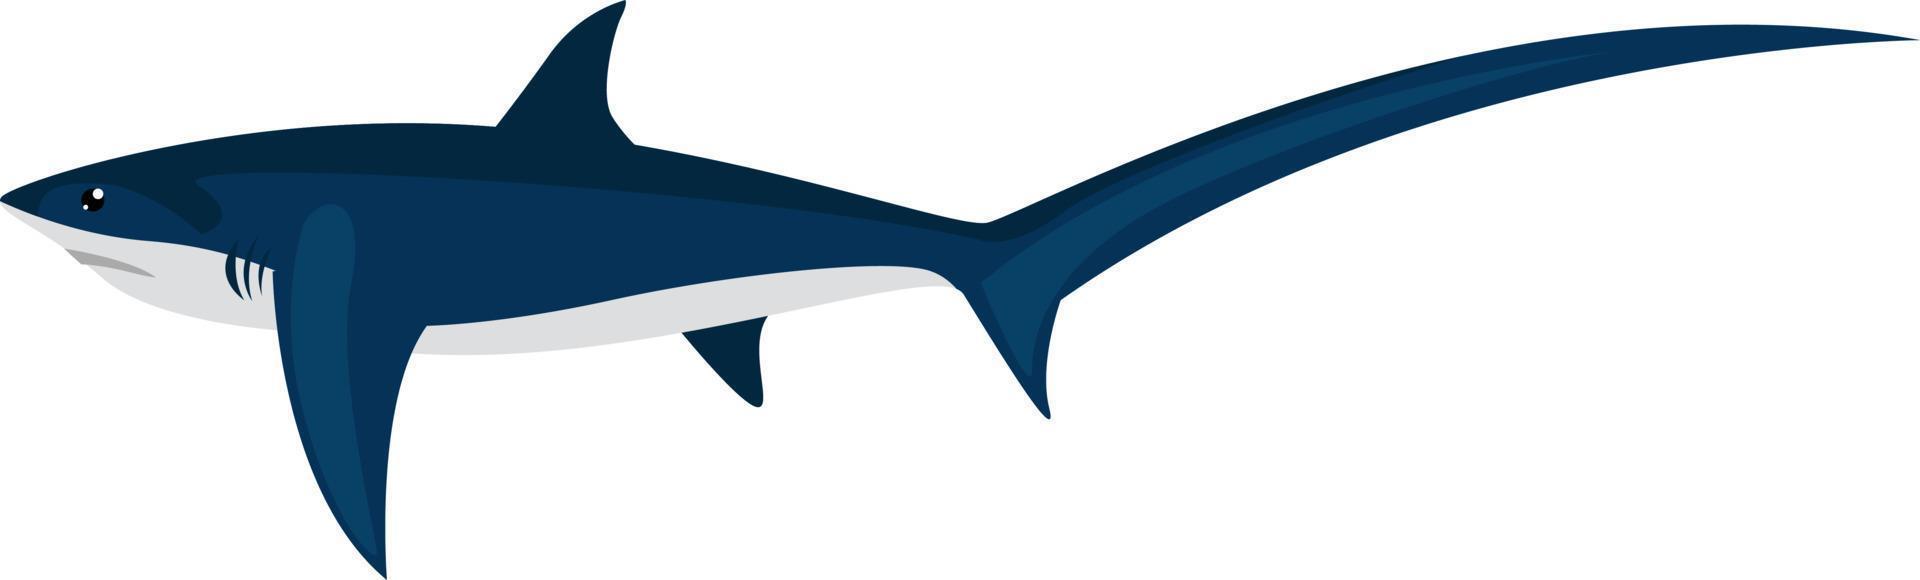 requin renard, illustration, vecteur sur fond blanc.